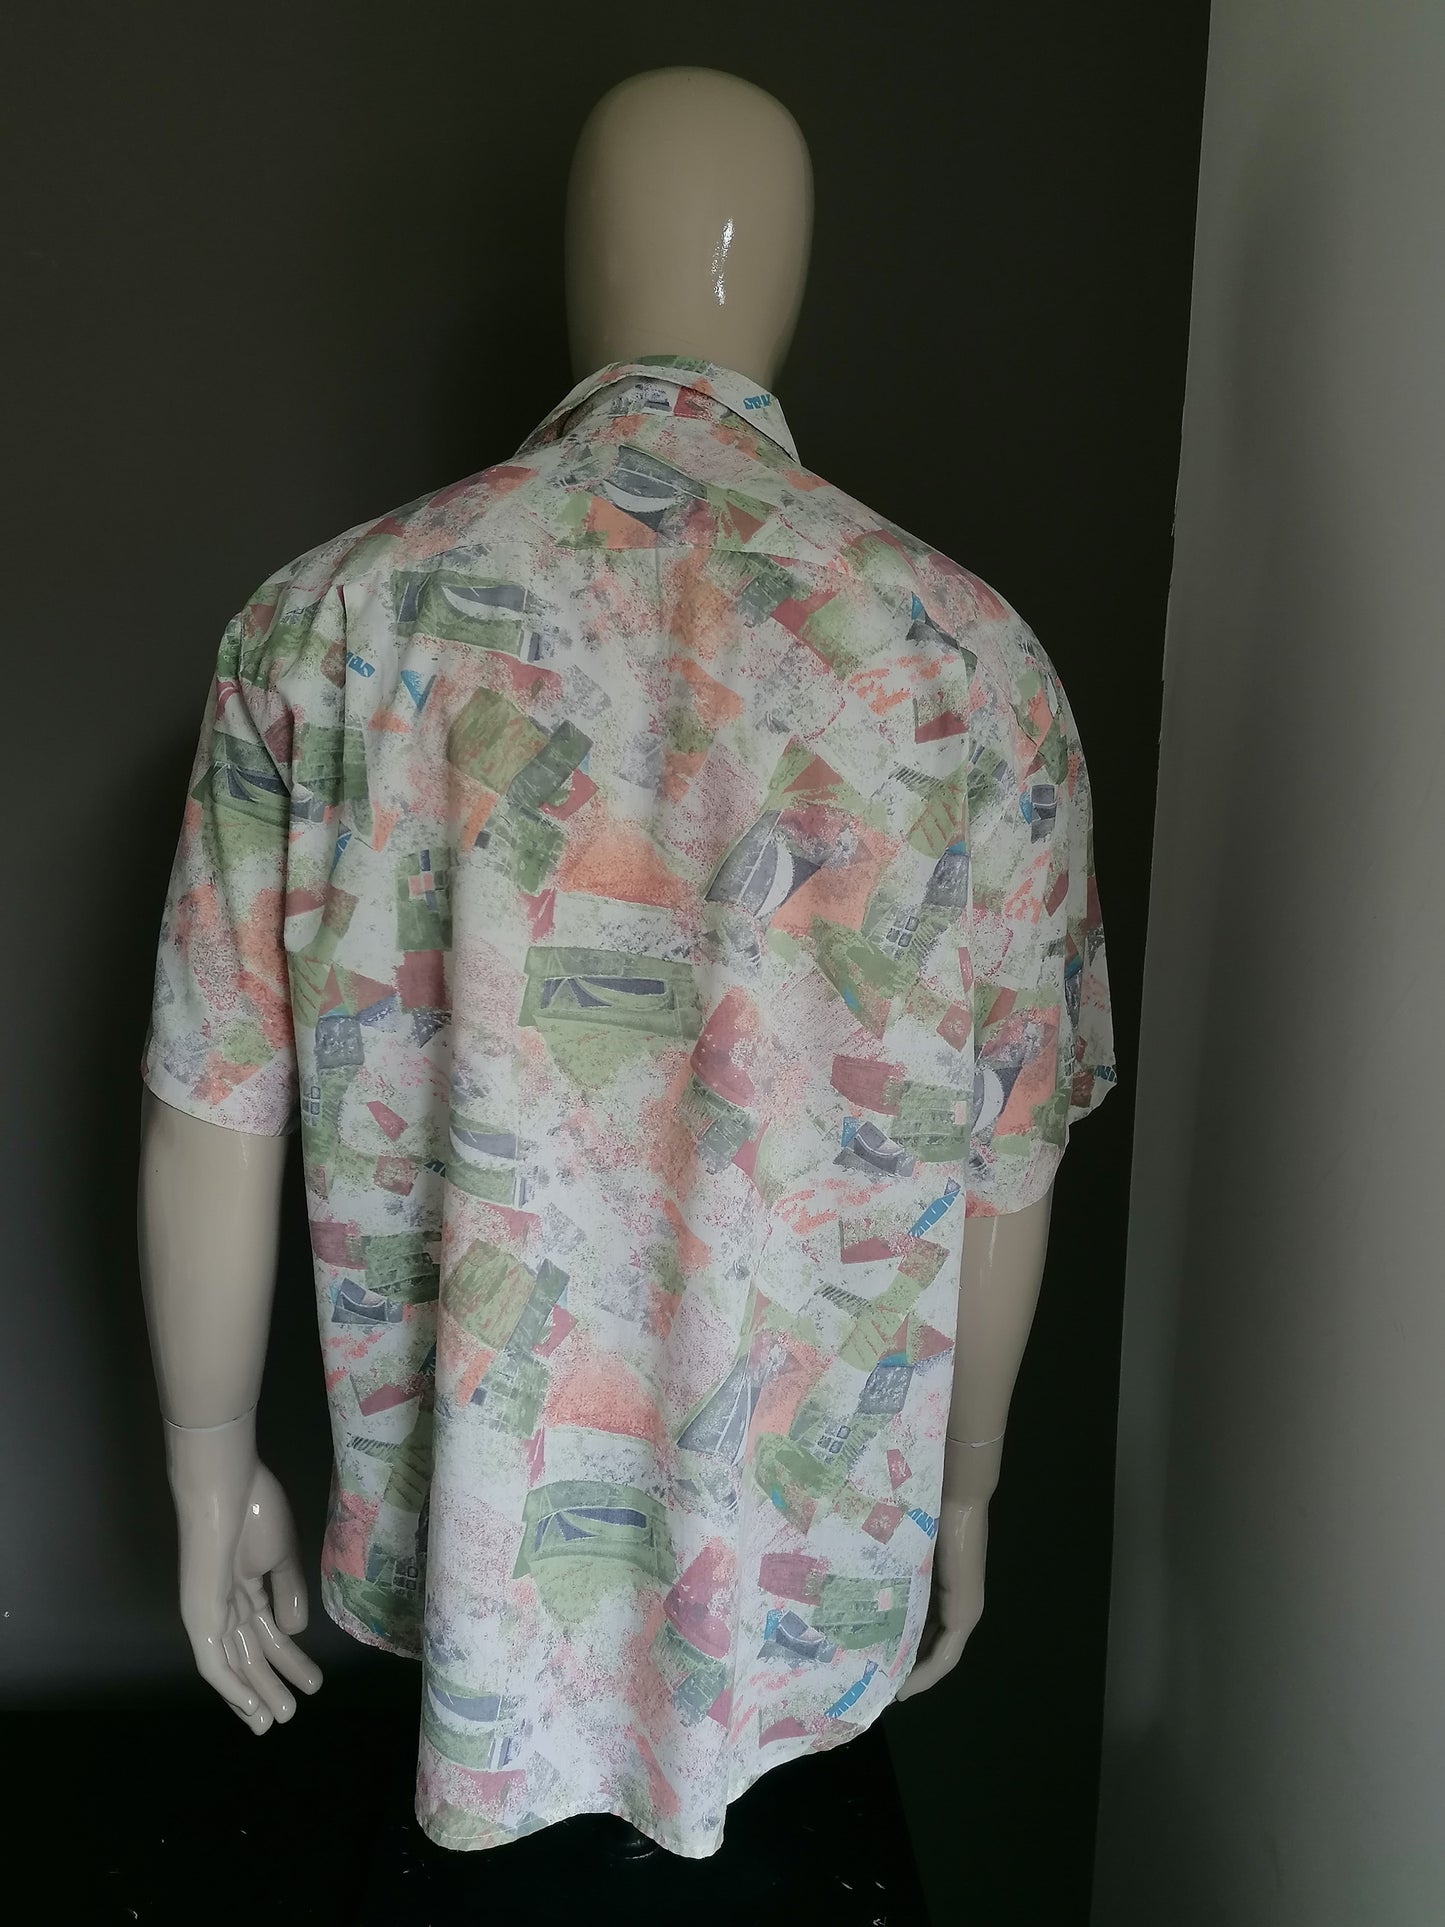 Shelt de chemise à manche courte des années 90. Impression beige verte rose. Taille xl / xxl / 2xl.